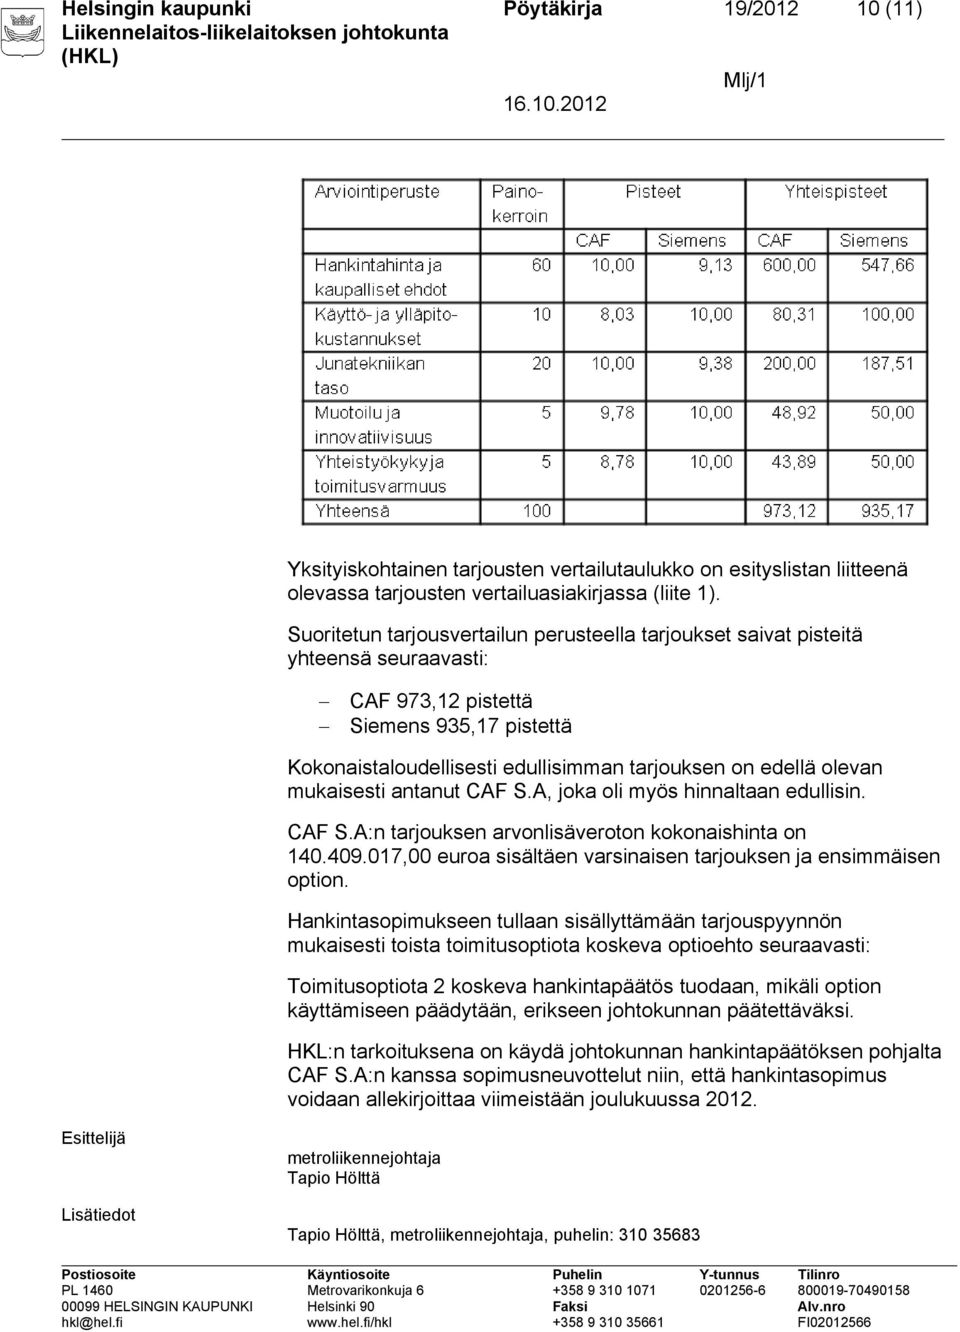 mukaisesti antanut CAF S.A, joka oli myös hinnaltaan edullisin. CAF S.A:n tarjouksen arvonlisäveroton kokonaishinta on 140.409.017,00 euroa sisältäen varsinaisen tarjouksen ja ensimmäisen option.